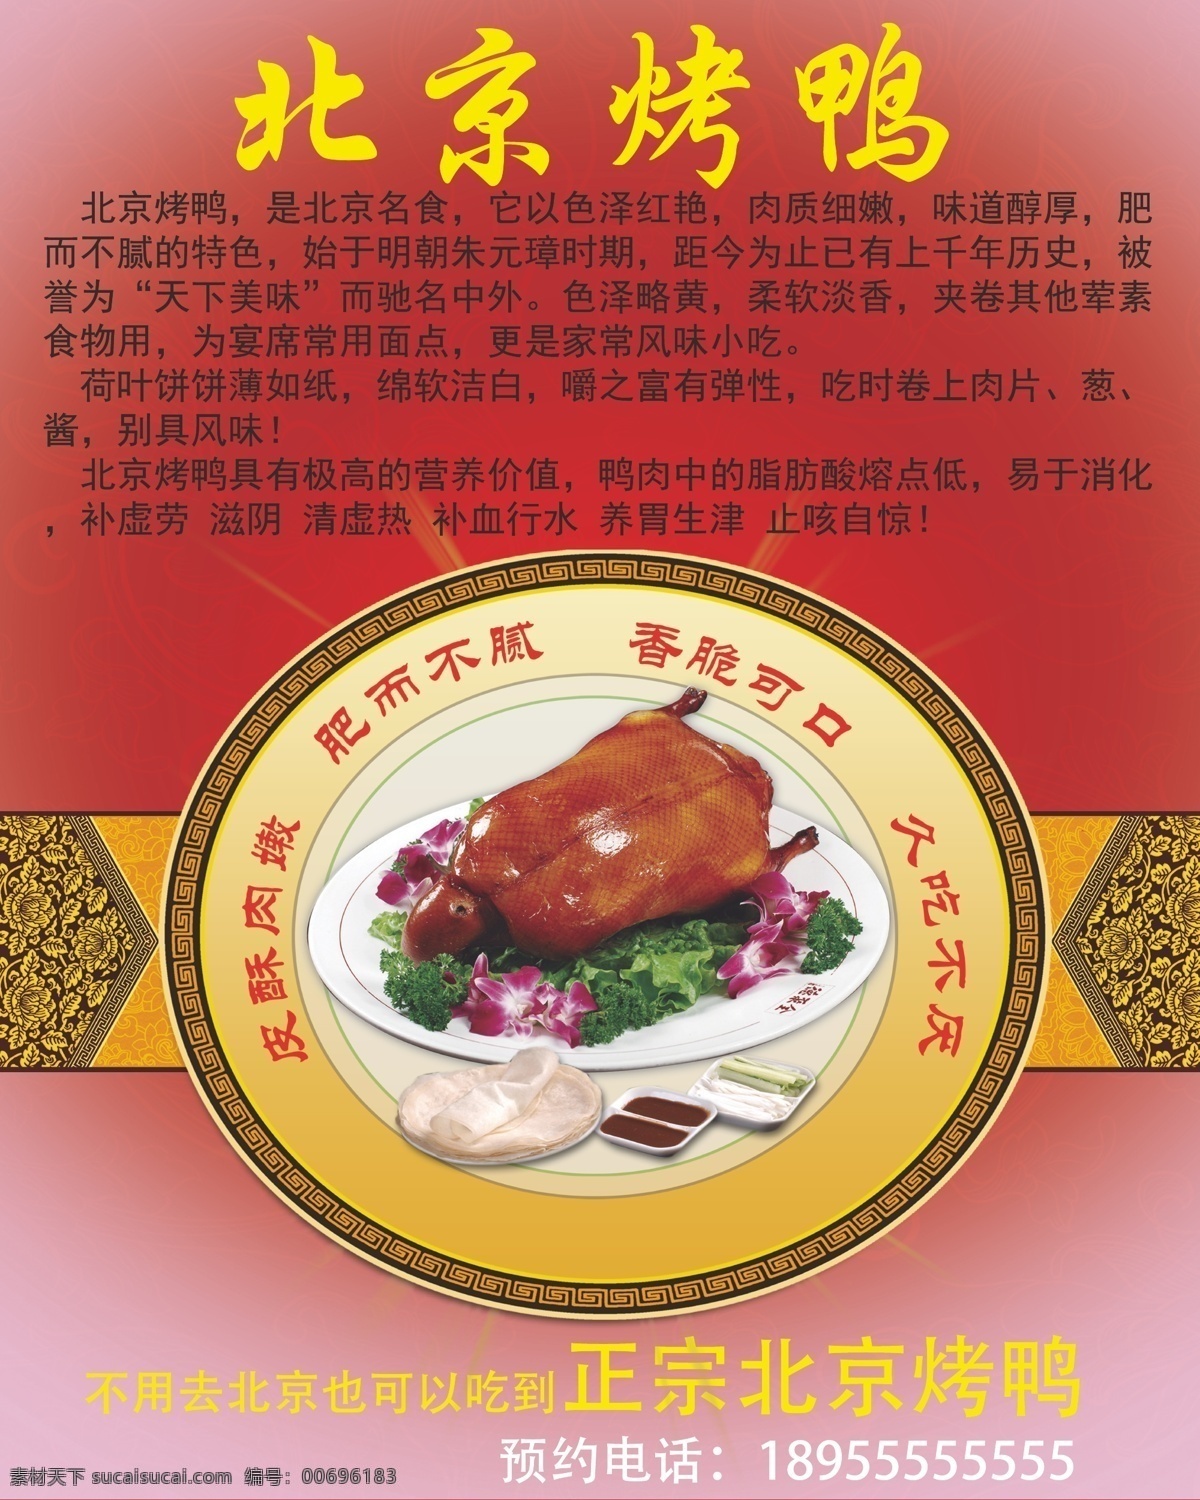 北京烤鸭宣传 背景烤鸭 宣传海报 宣传彩页 张贴海报 烤鸭海报